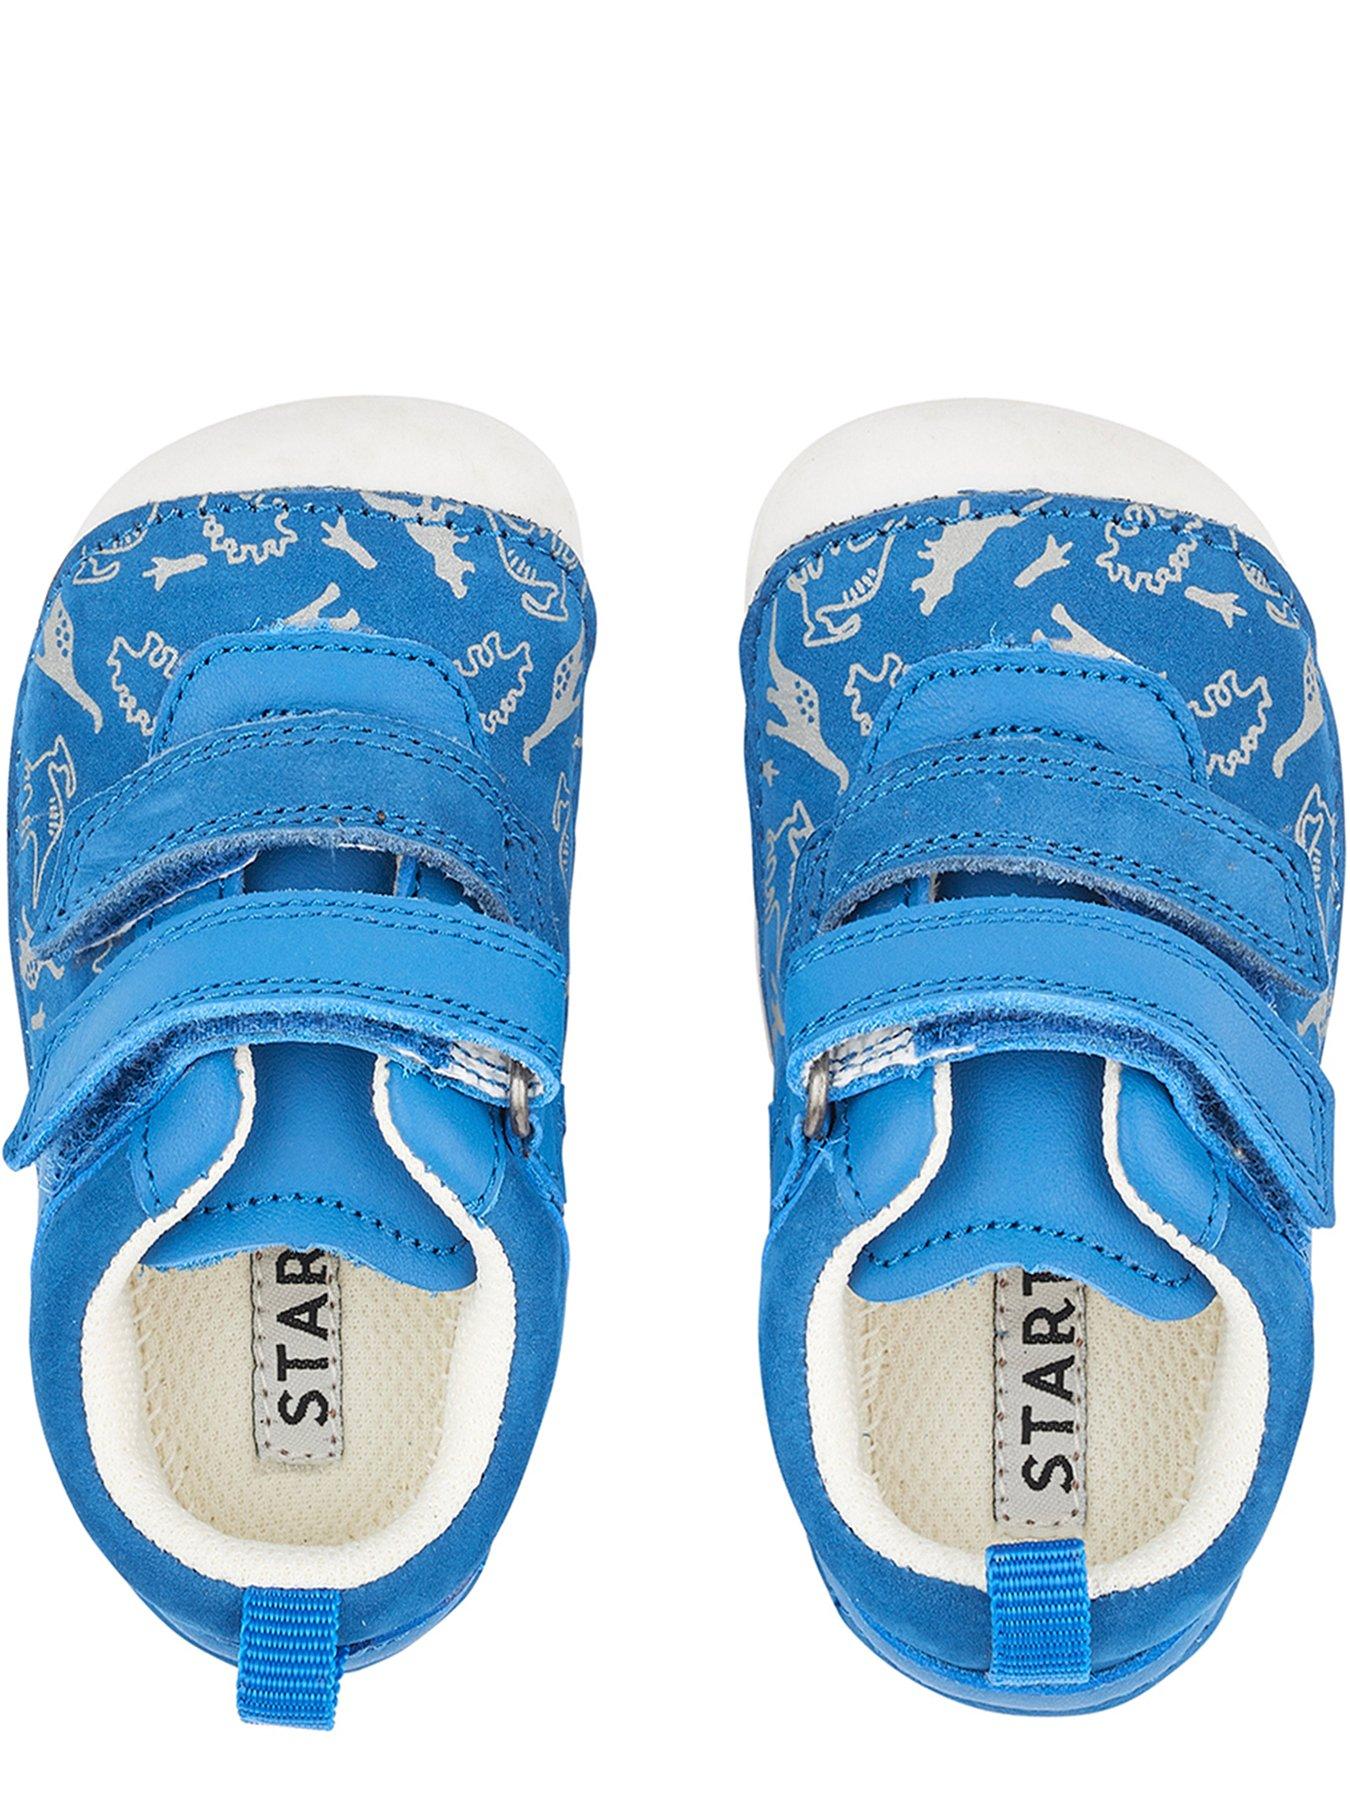 Shoes & boots Roar Baby Strap Shoe - Blue